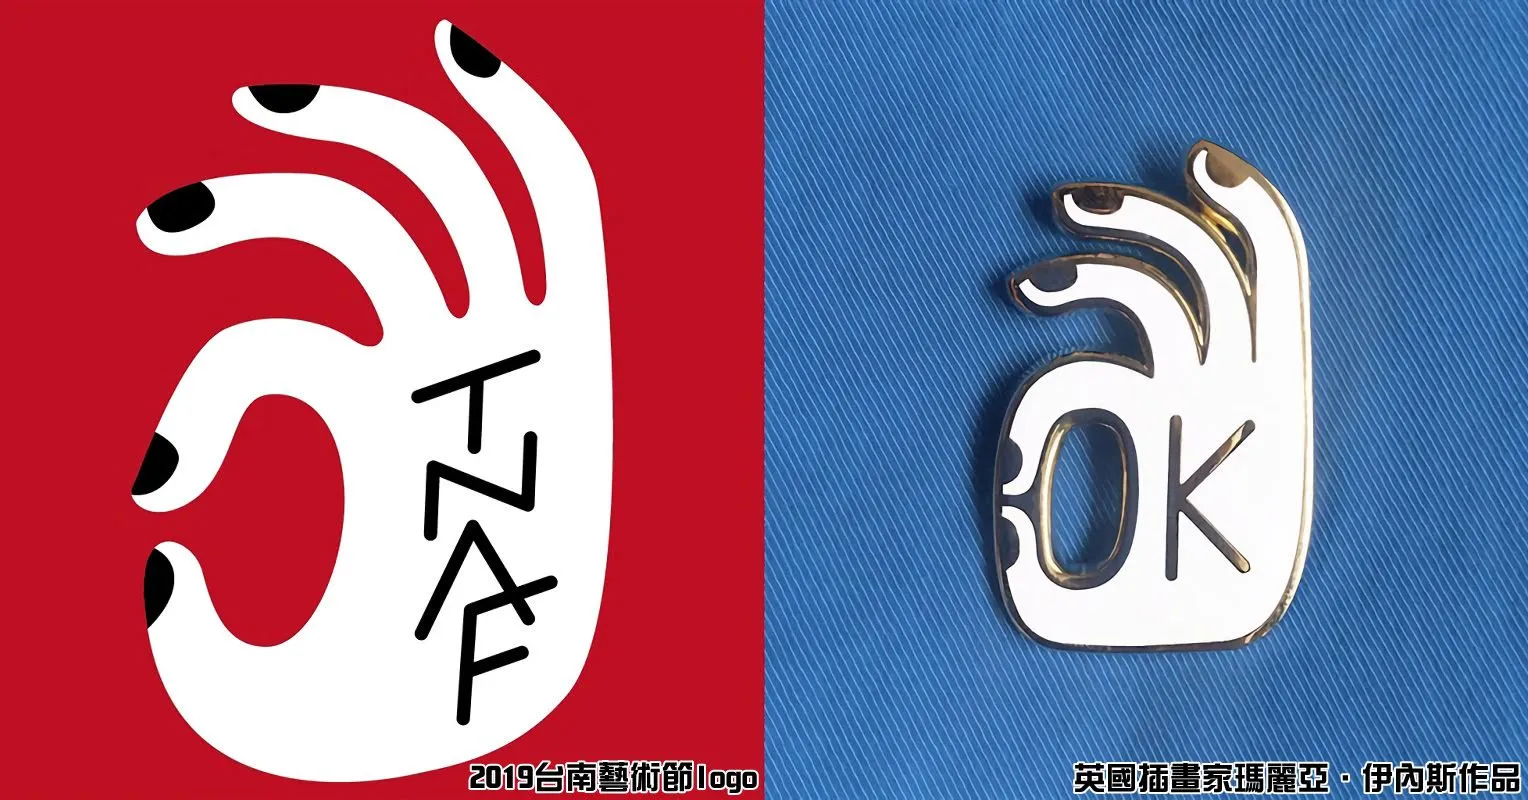 2019台南藝術節主視覺Logo爆抄襲英國插畫家5年前作品 全面下架